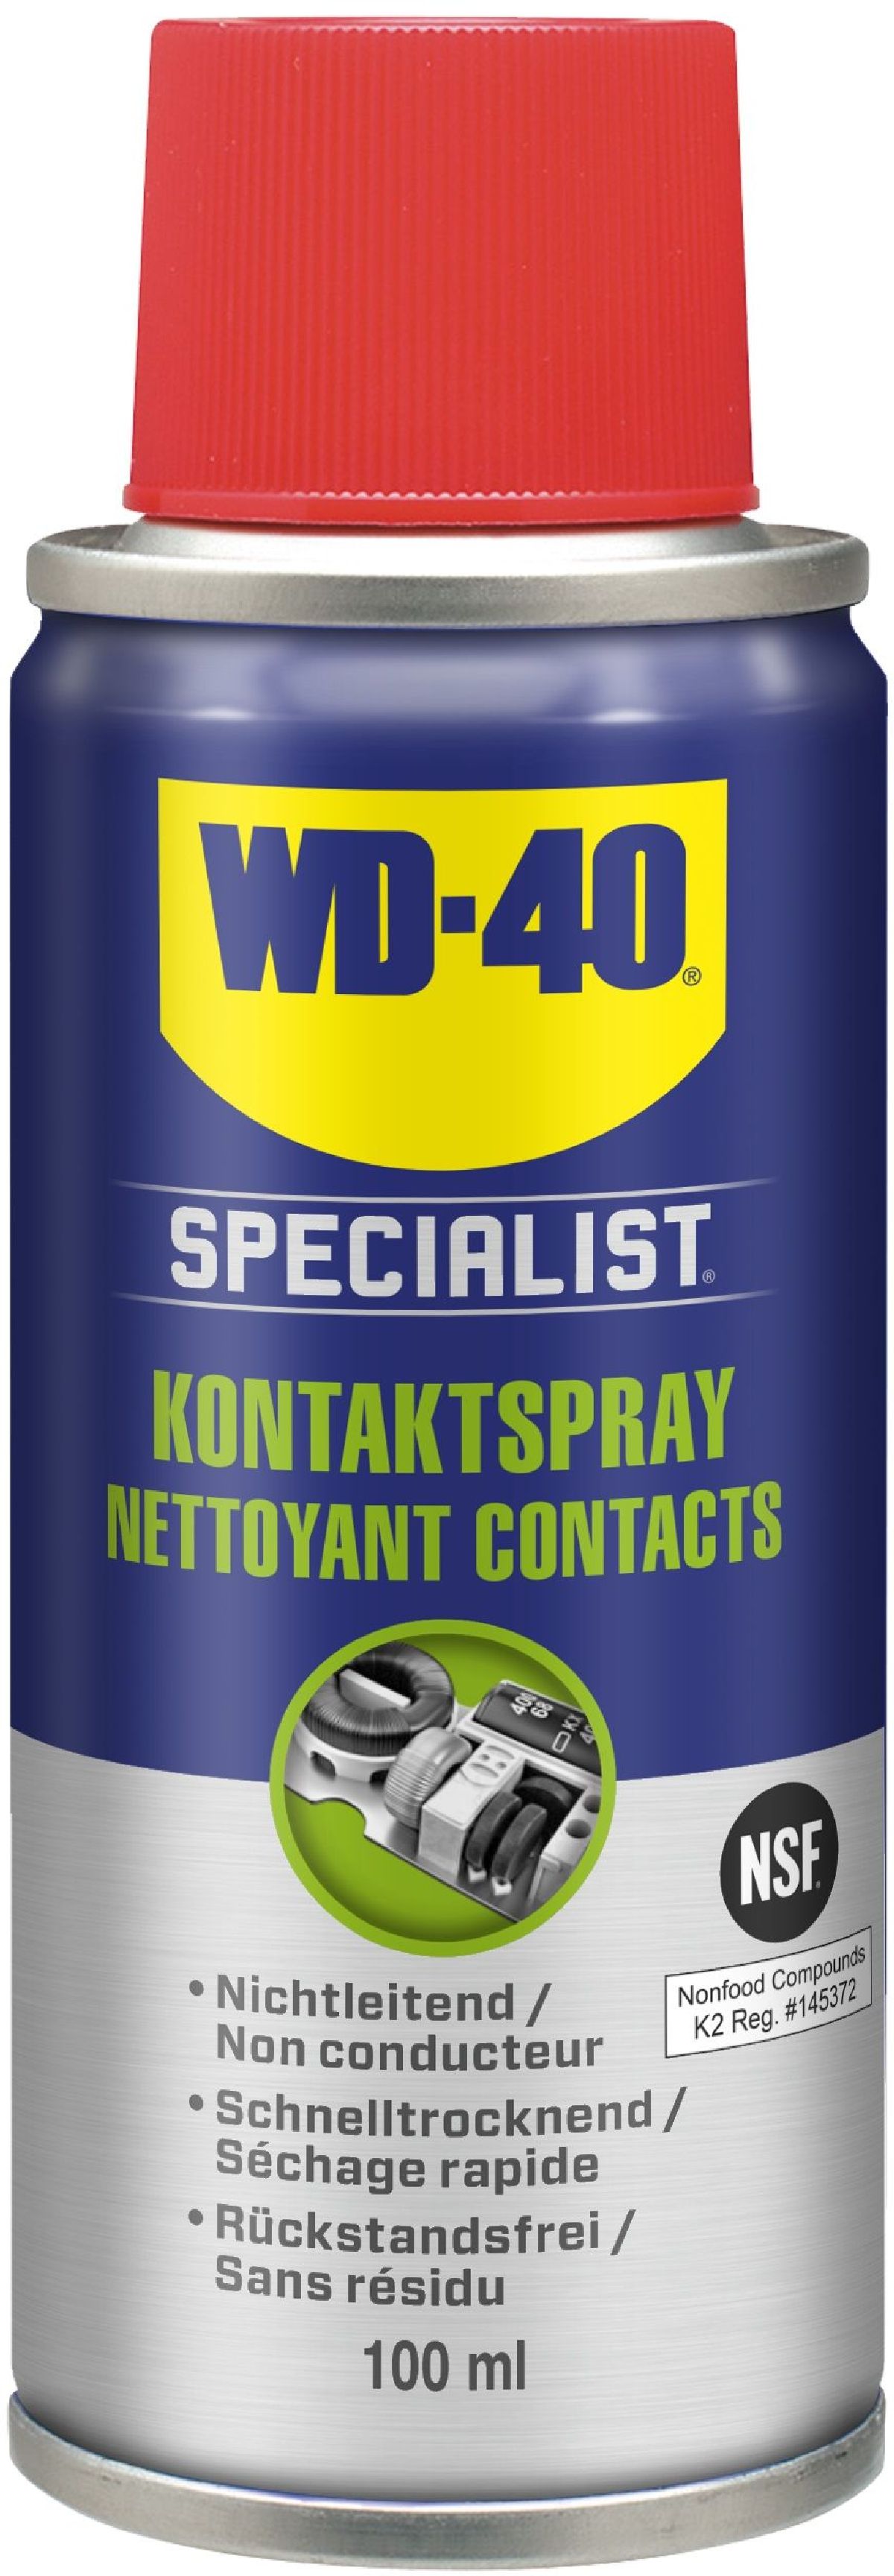 Specialist Chemie / / - Specialist Krautli Gesamtsortiment Shop / + Handpflege - AG / + WD-40 WD-40 WD-40 (Schweiz) Schmiermittel